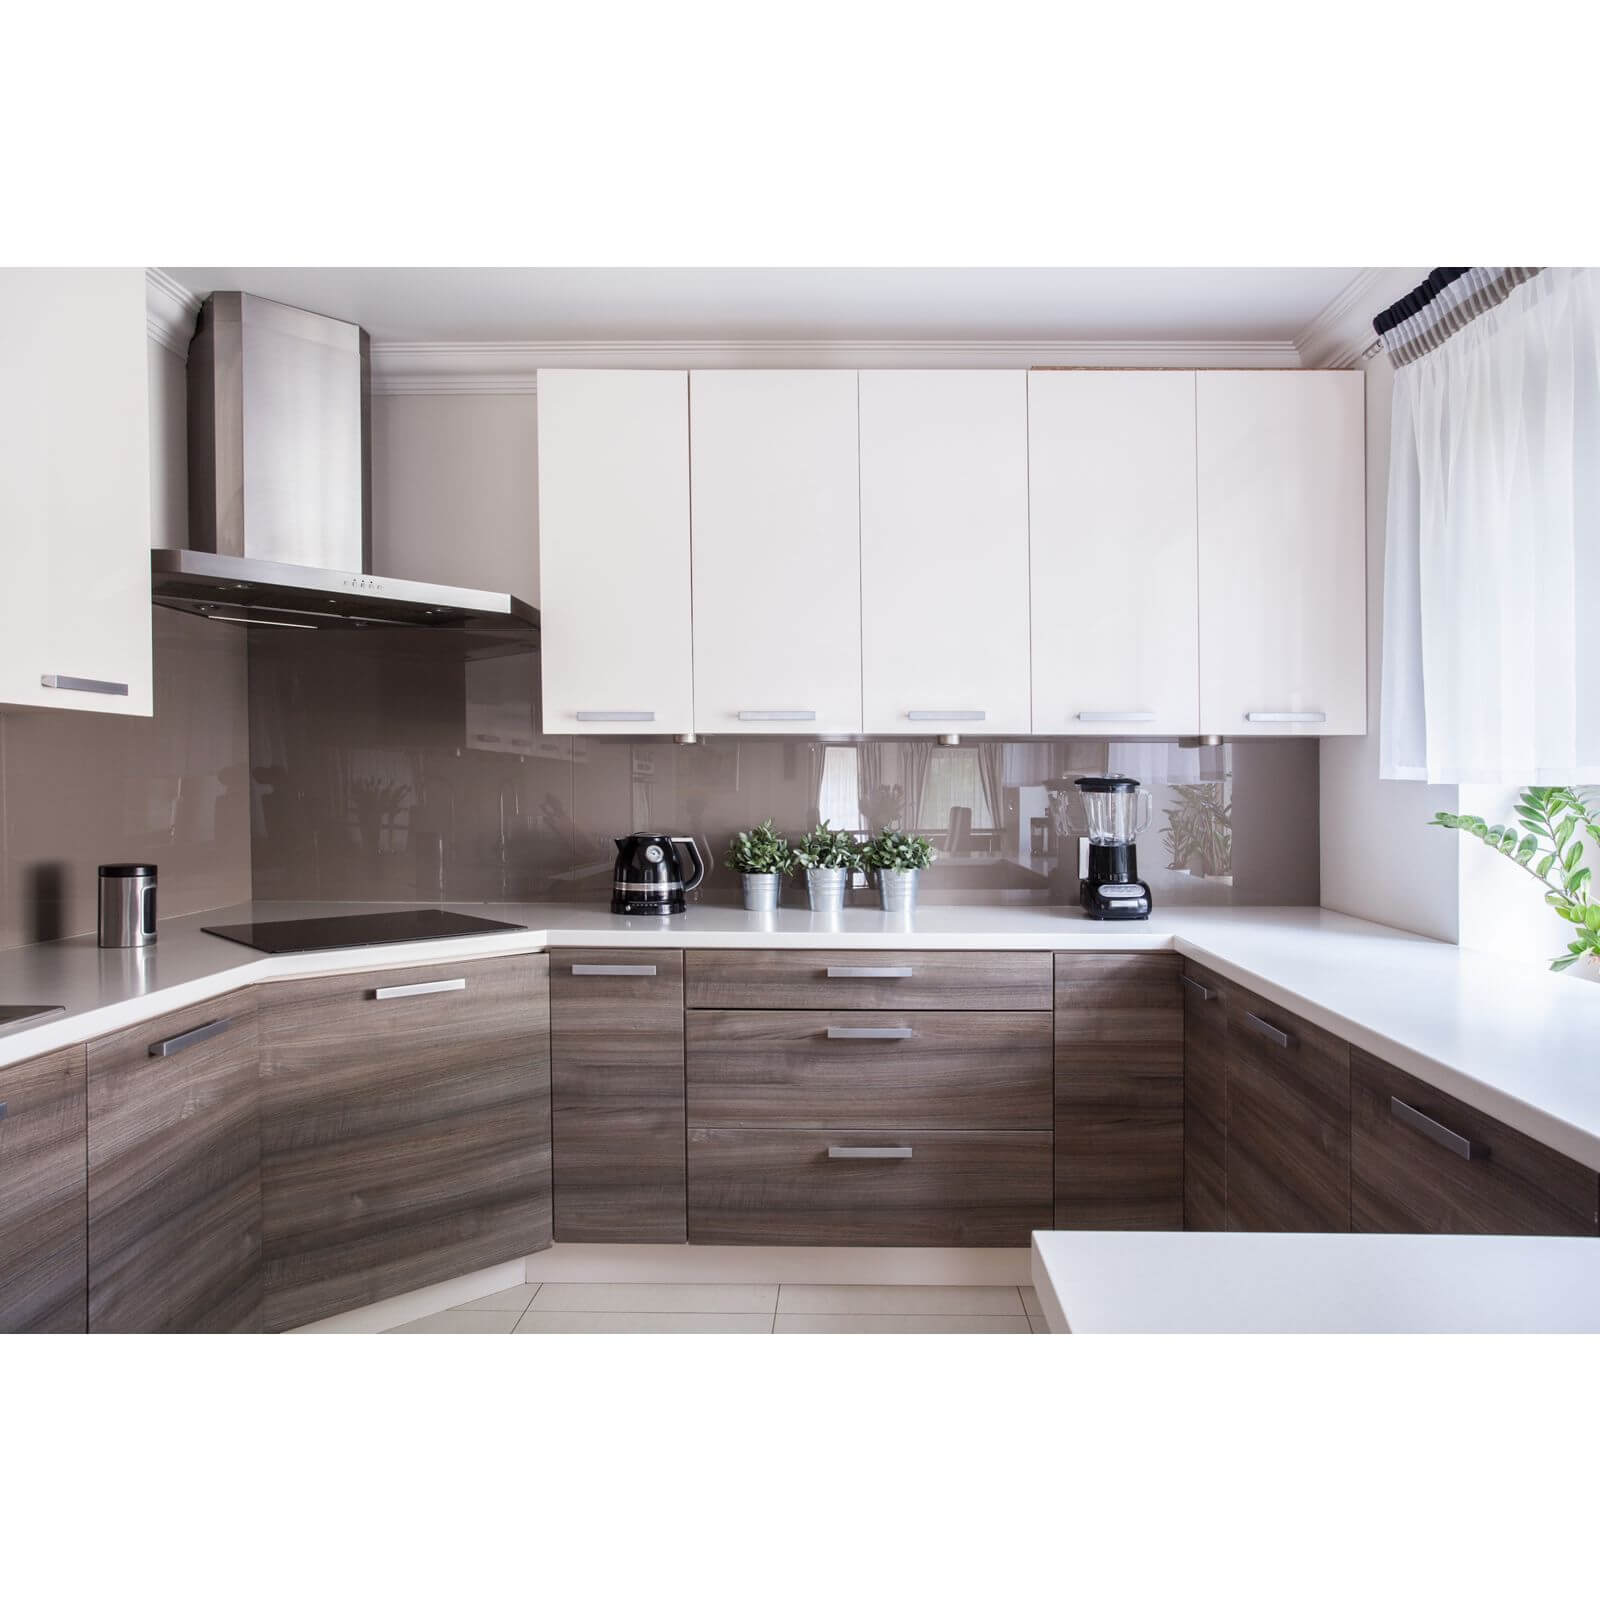 Zenolite Acrylic Kitchen Splashback Panel - 2070 x 500mm - Mocha